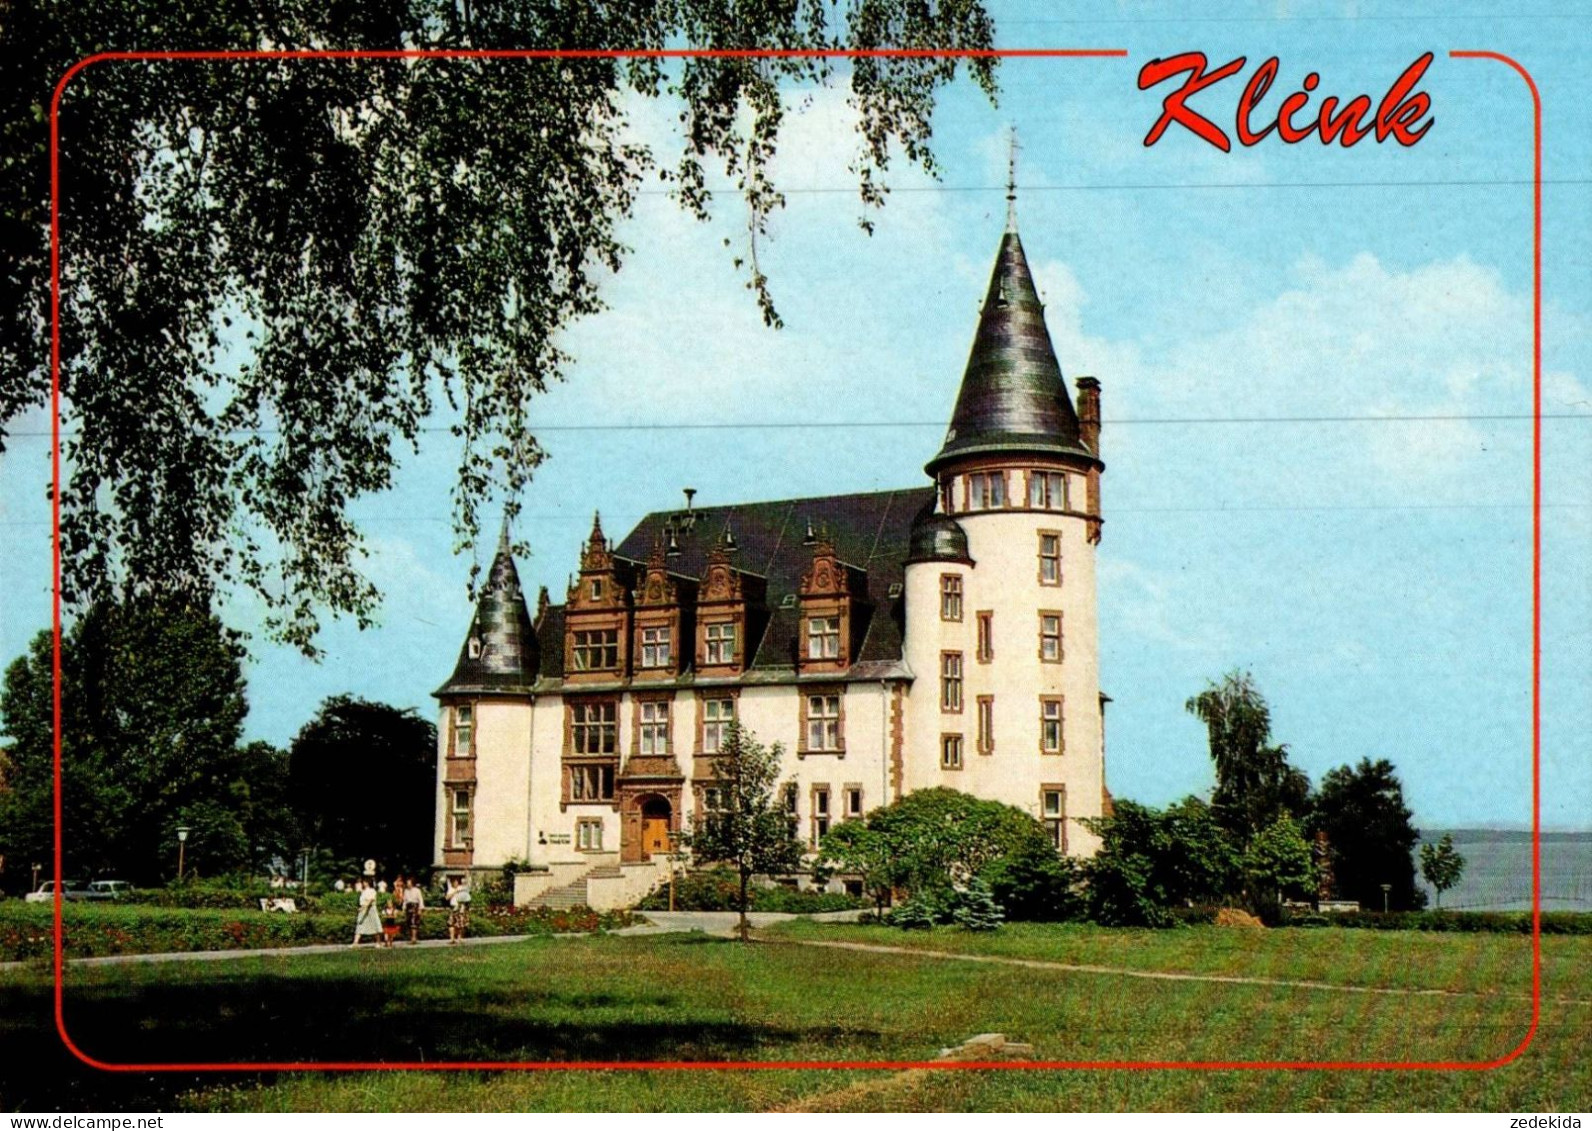 H1234 - TOP Klink Schloß - Bild Und Heimat Reichenbach Qualitätskarte - Waren (Müritz)